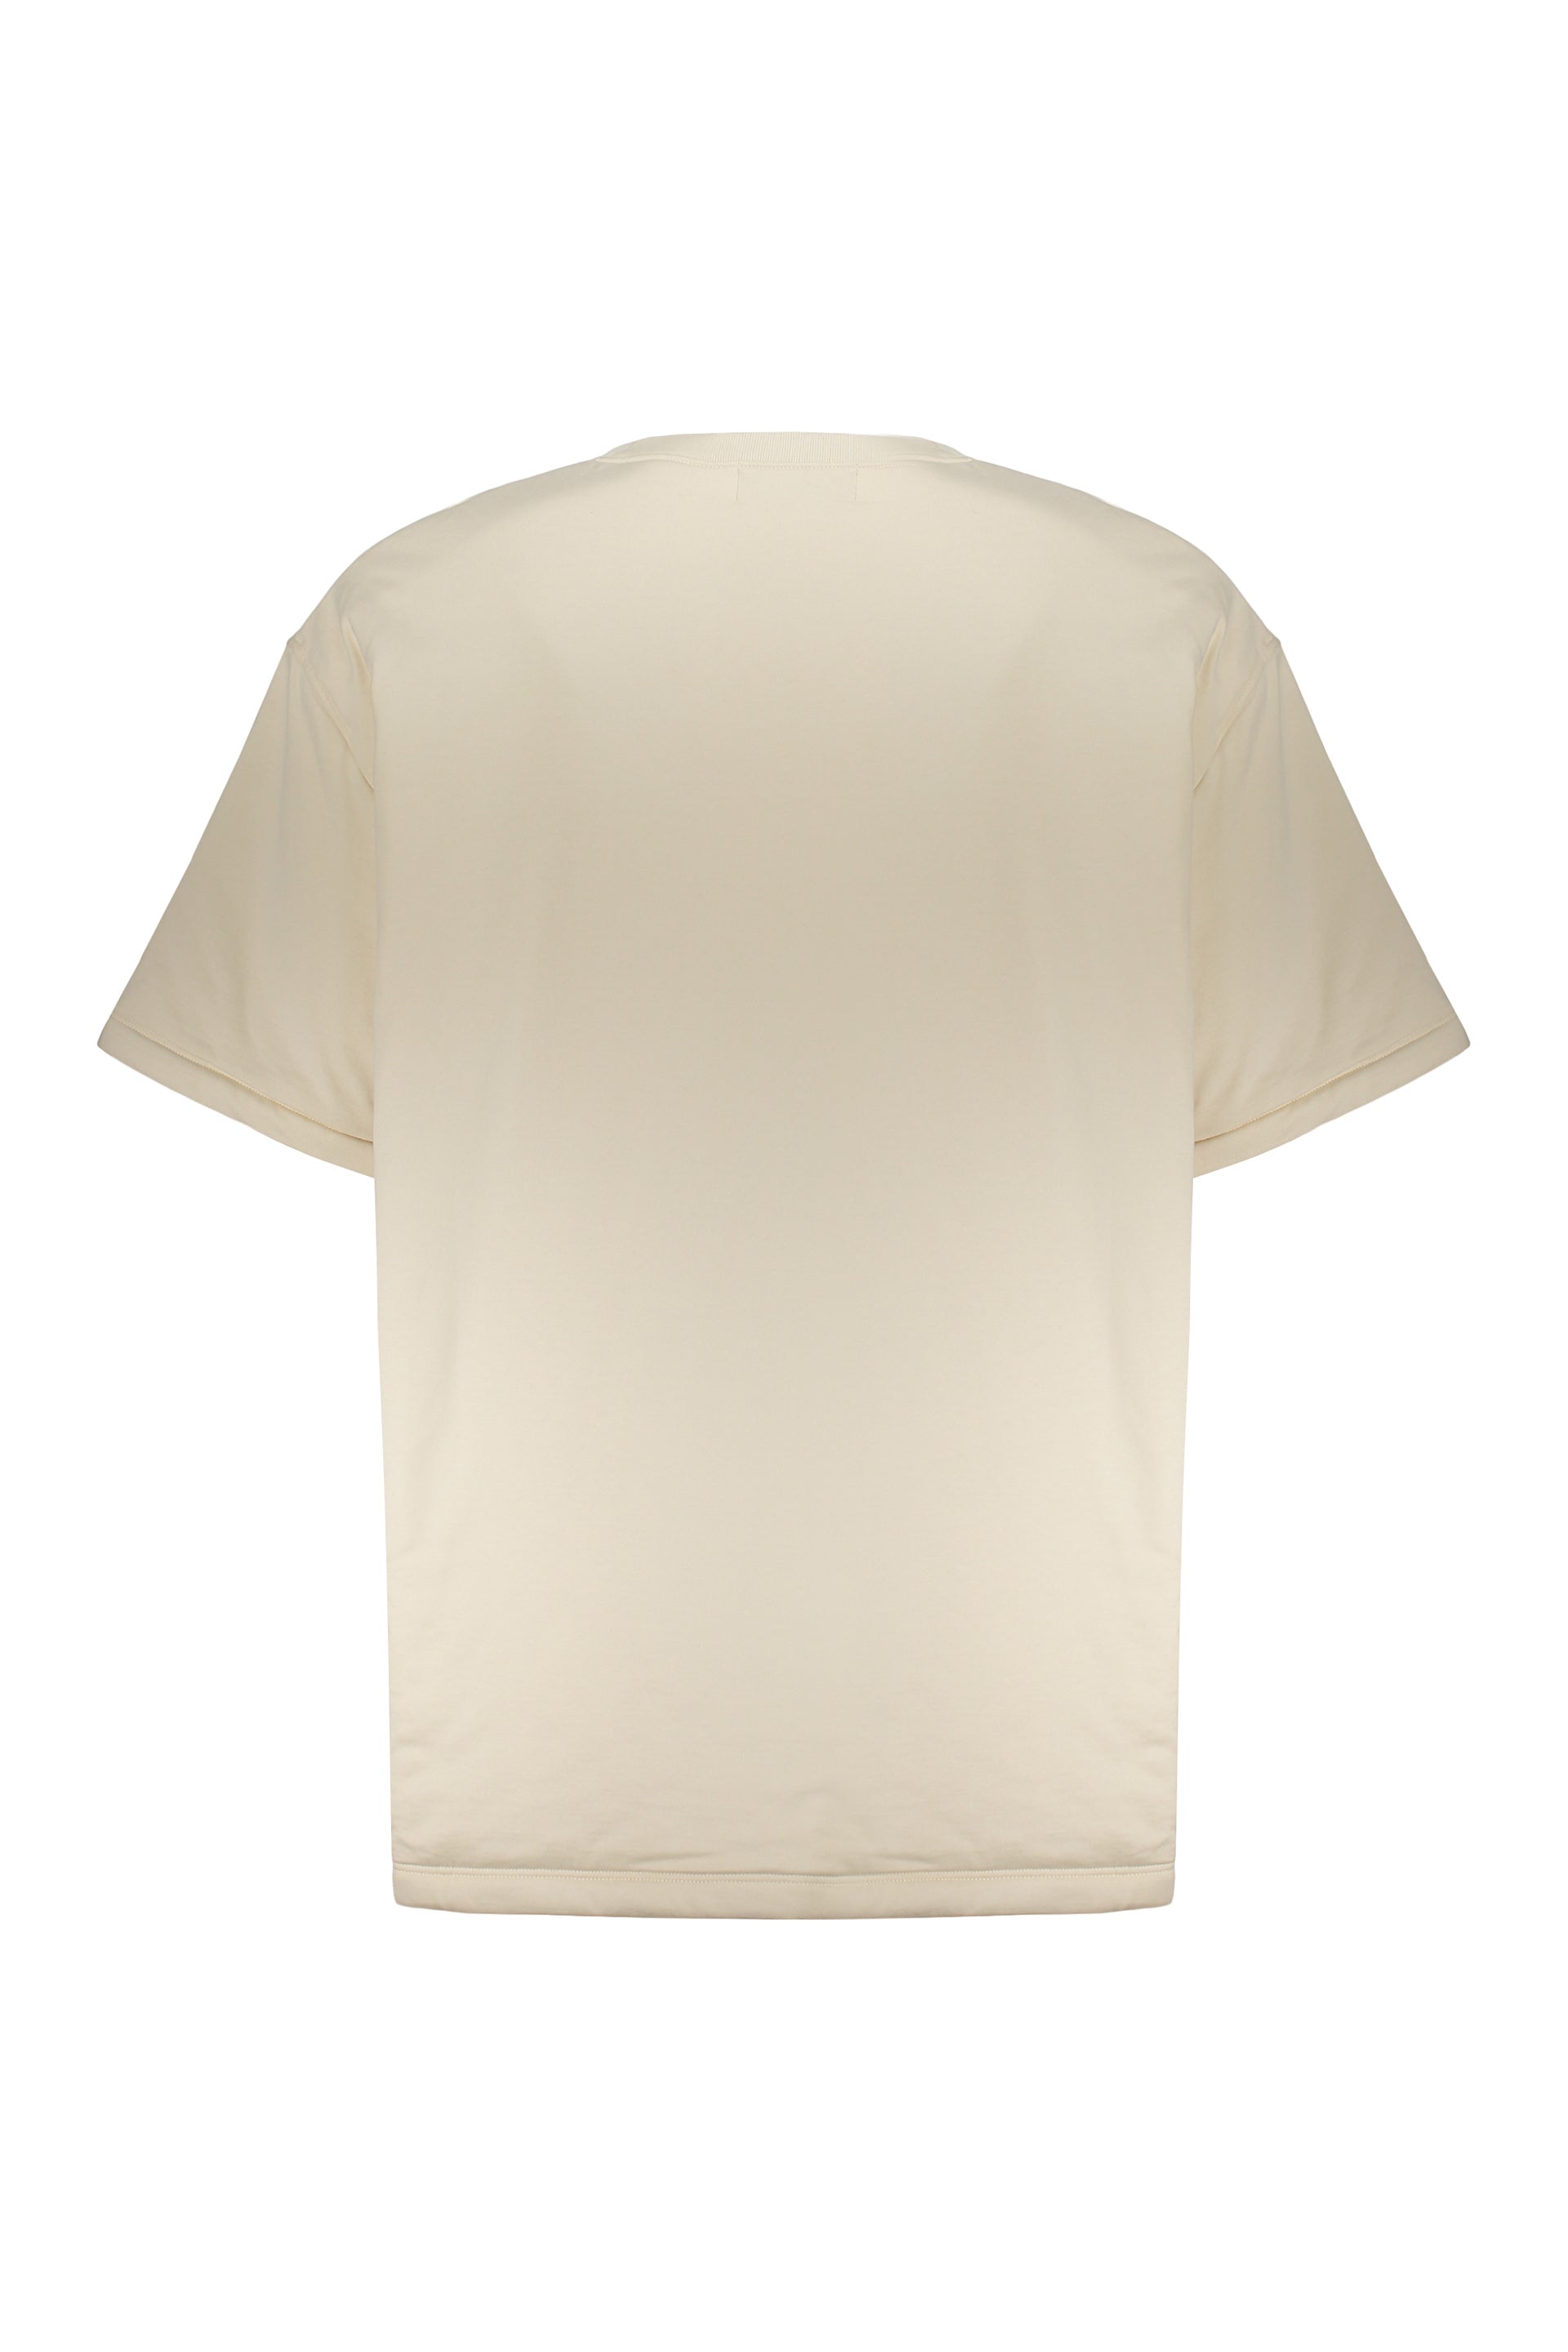 AMBUSH-OUTLET-SALE-Cotton-maxi-T-shirt-Shirts-ARCHIVE-COLLECTION-2.jpg